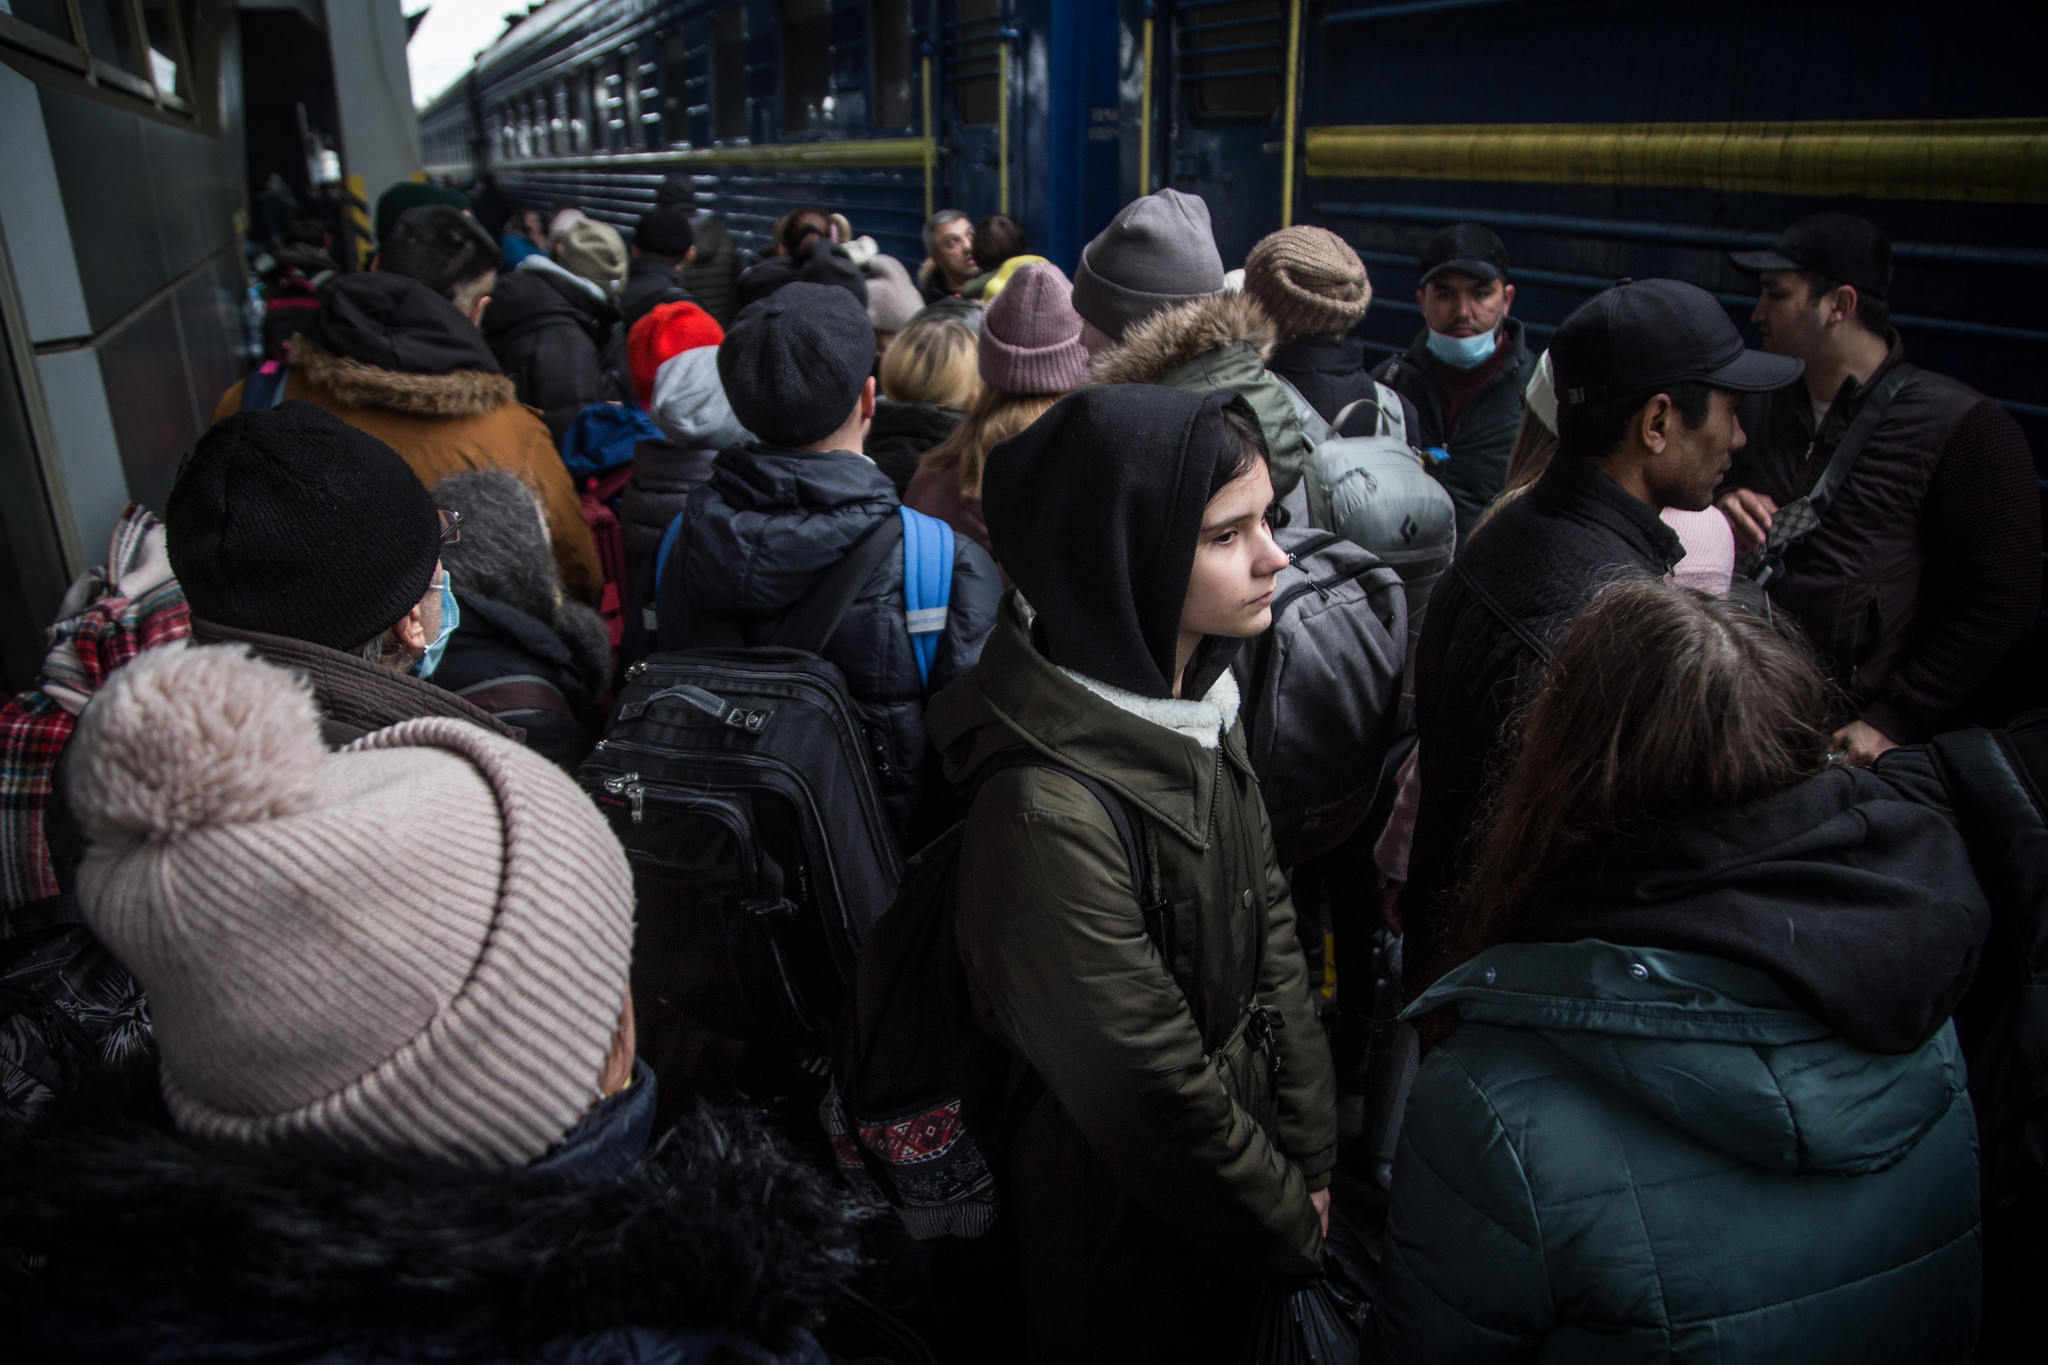 Pakolaisia odottamassa junaan nousua